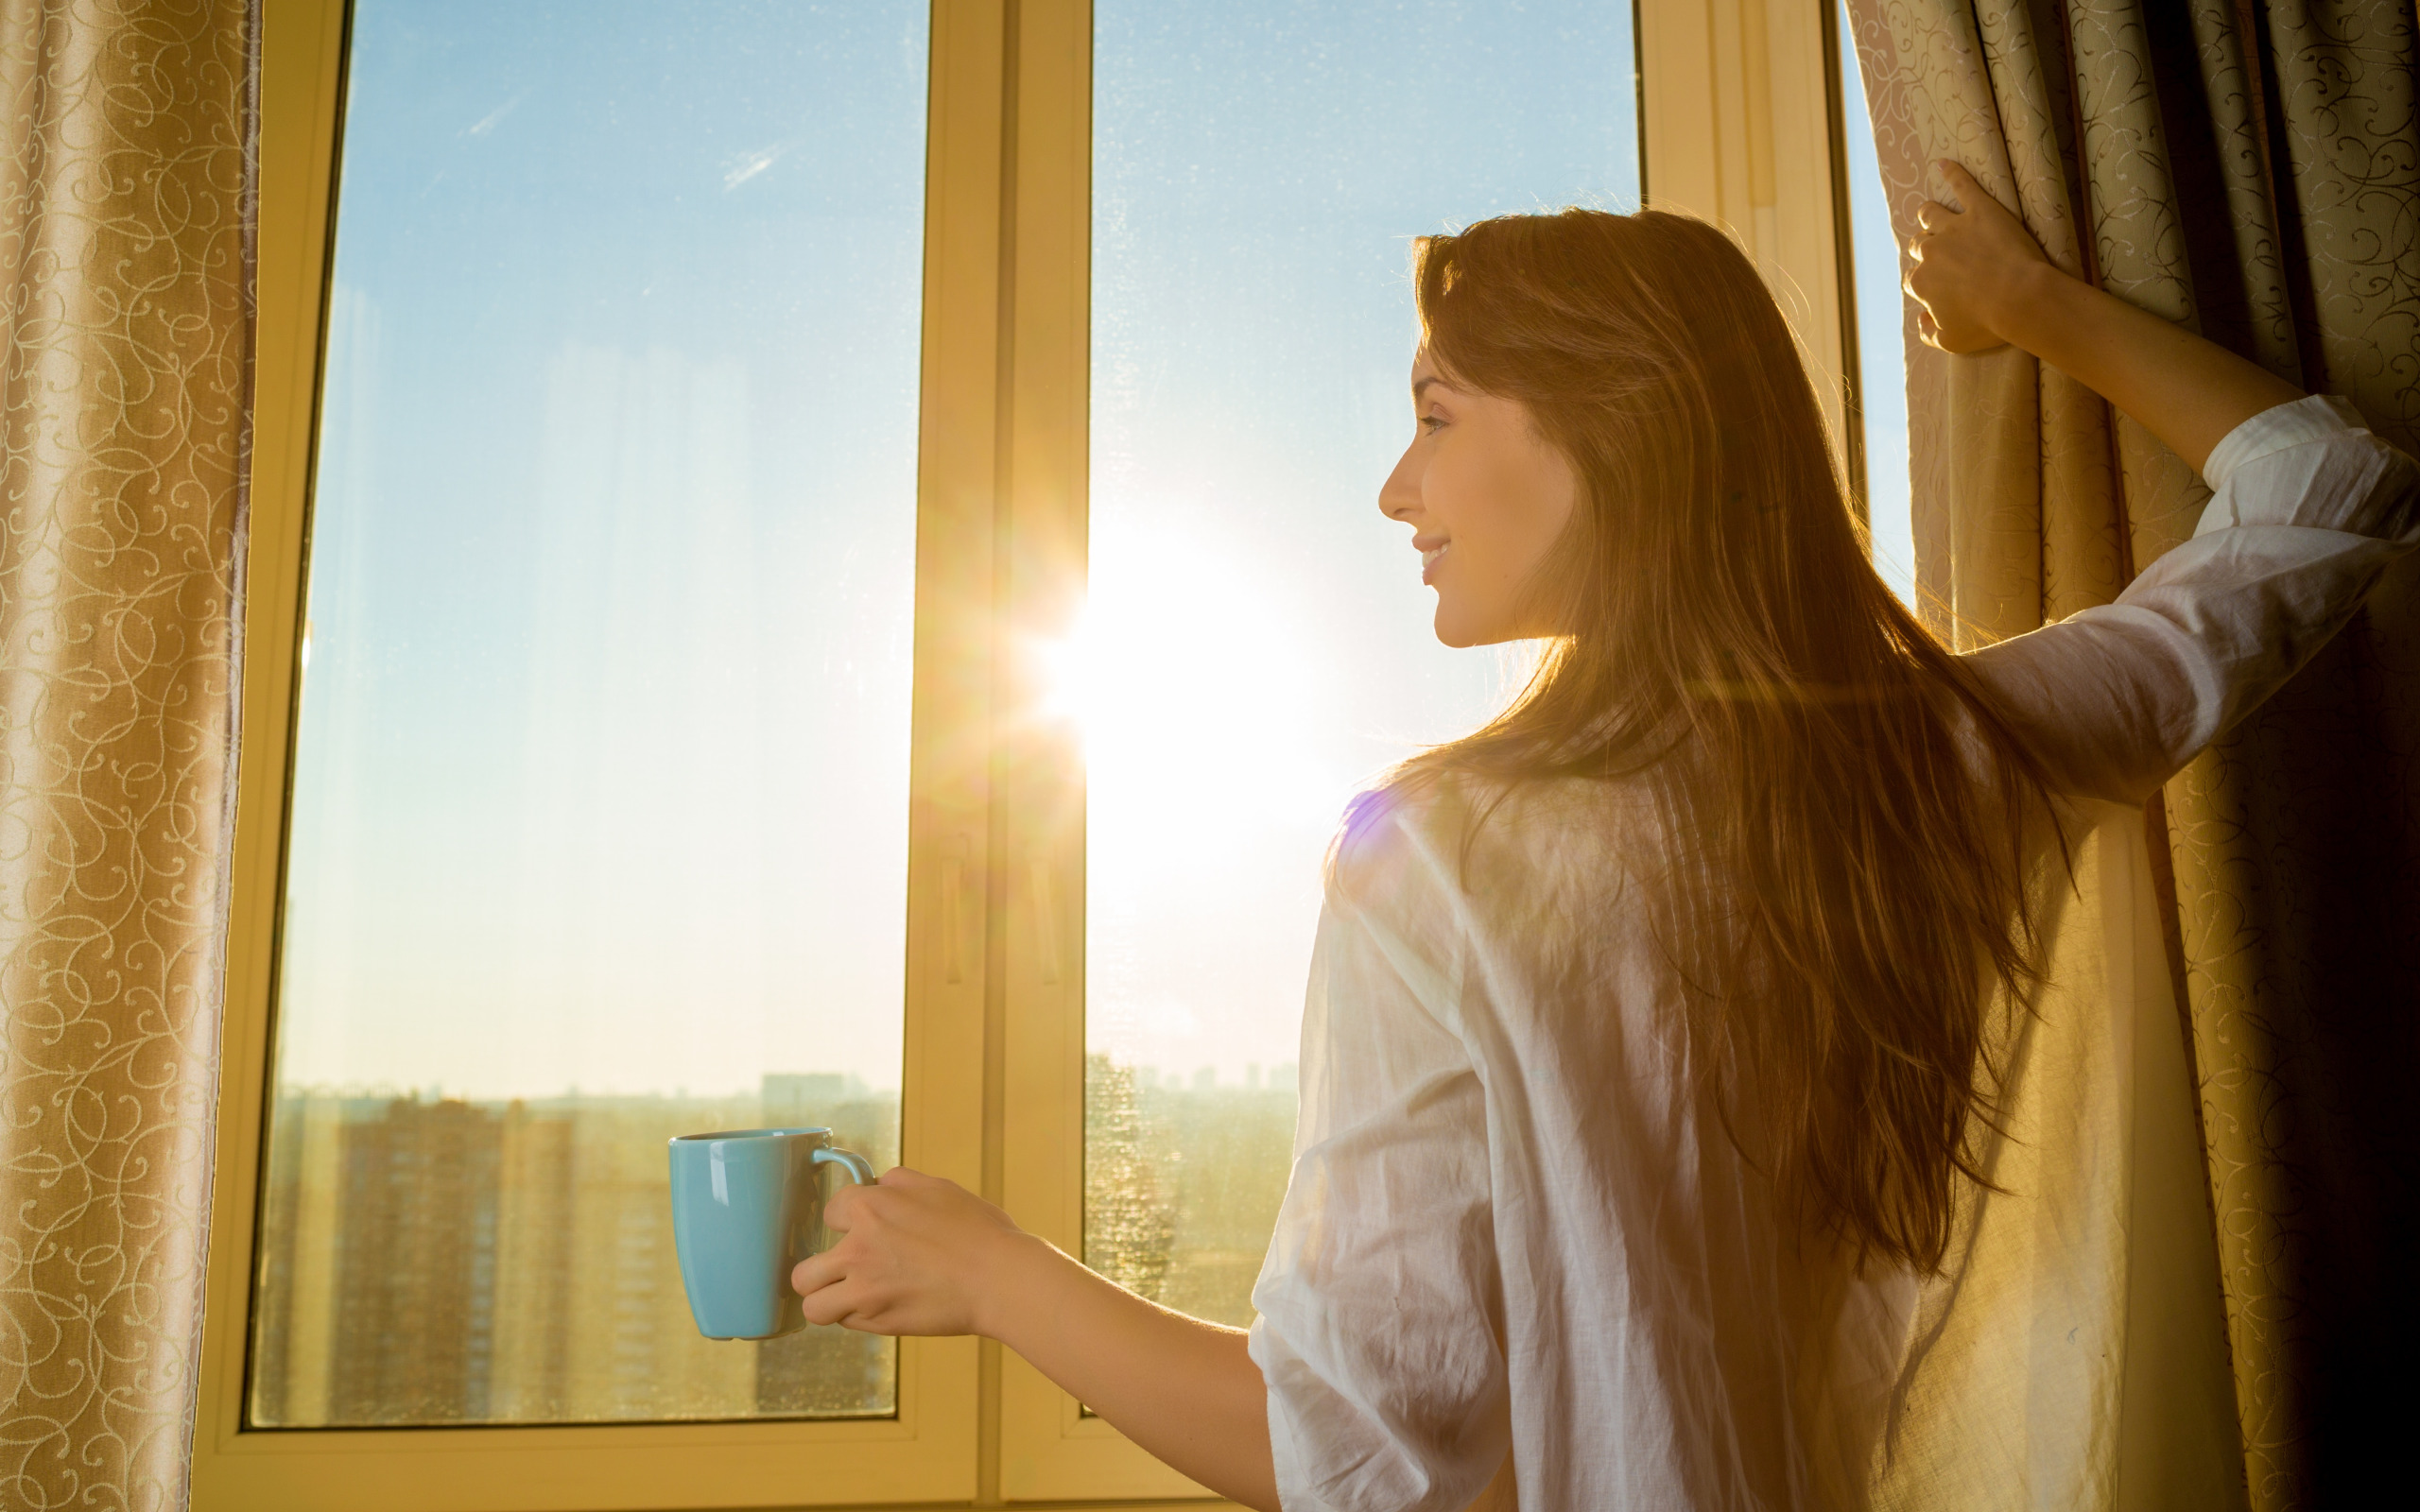 На рассвете я просыпаюсь. Девушка у окна. Она девушка. Солнечное утро в окне. Женщина возле окна.